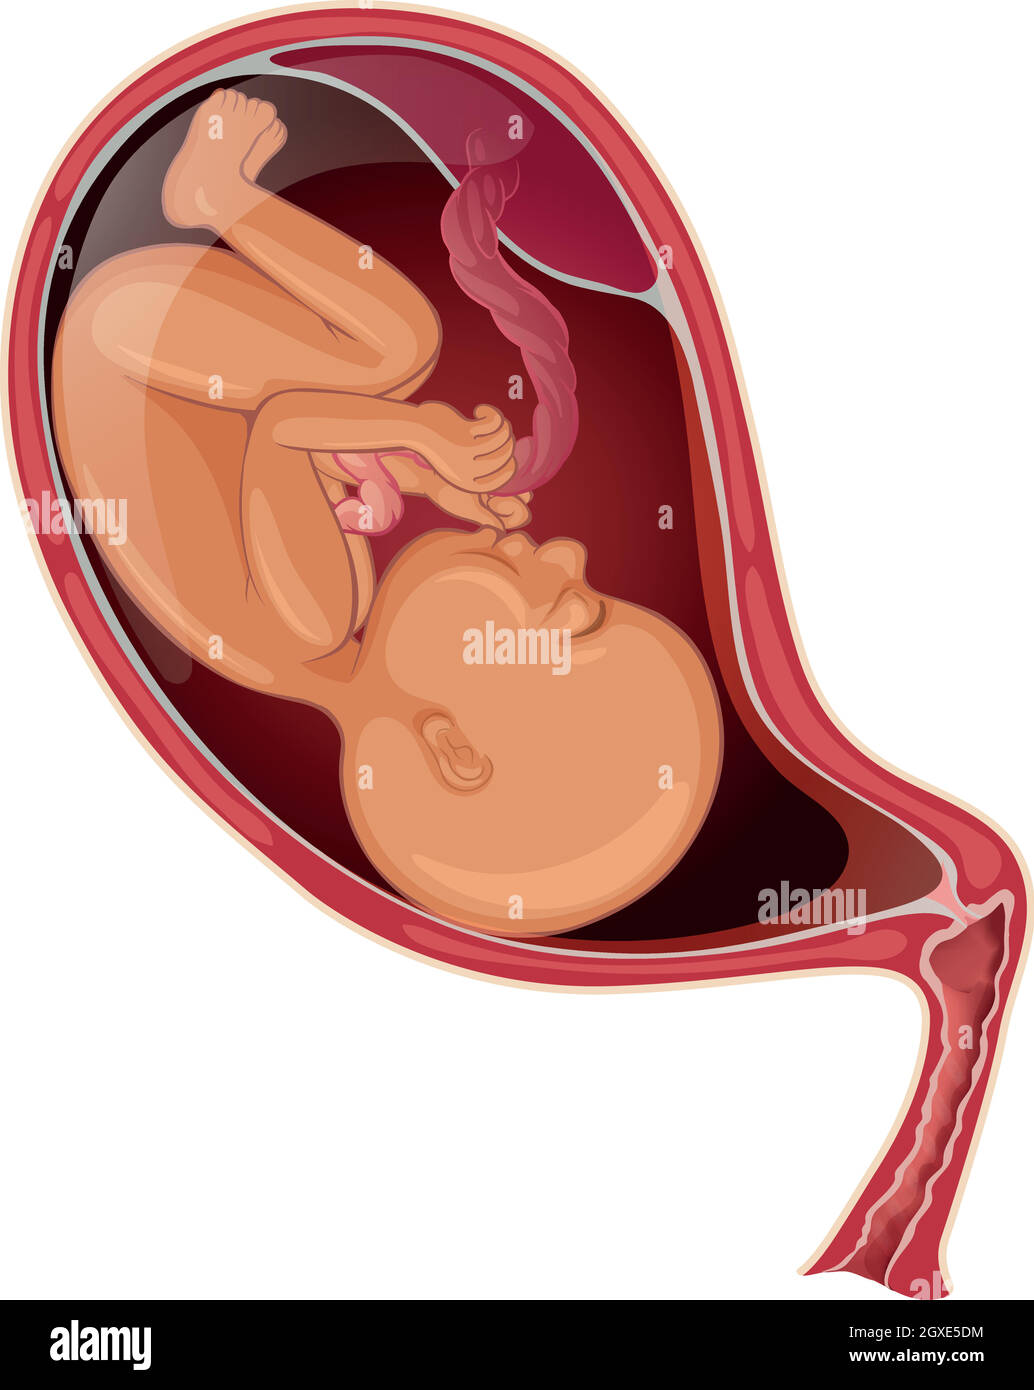 Bébé dans l'utérus de la femme enceinte Illustration de Vecteur